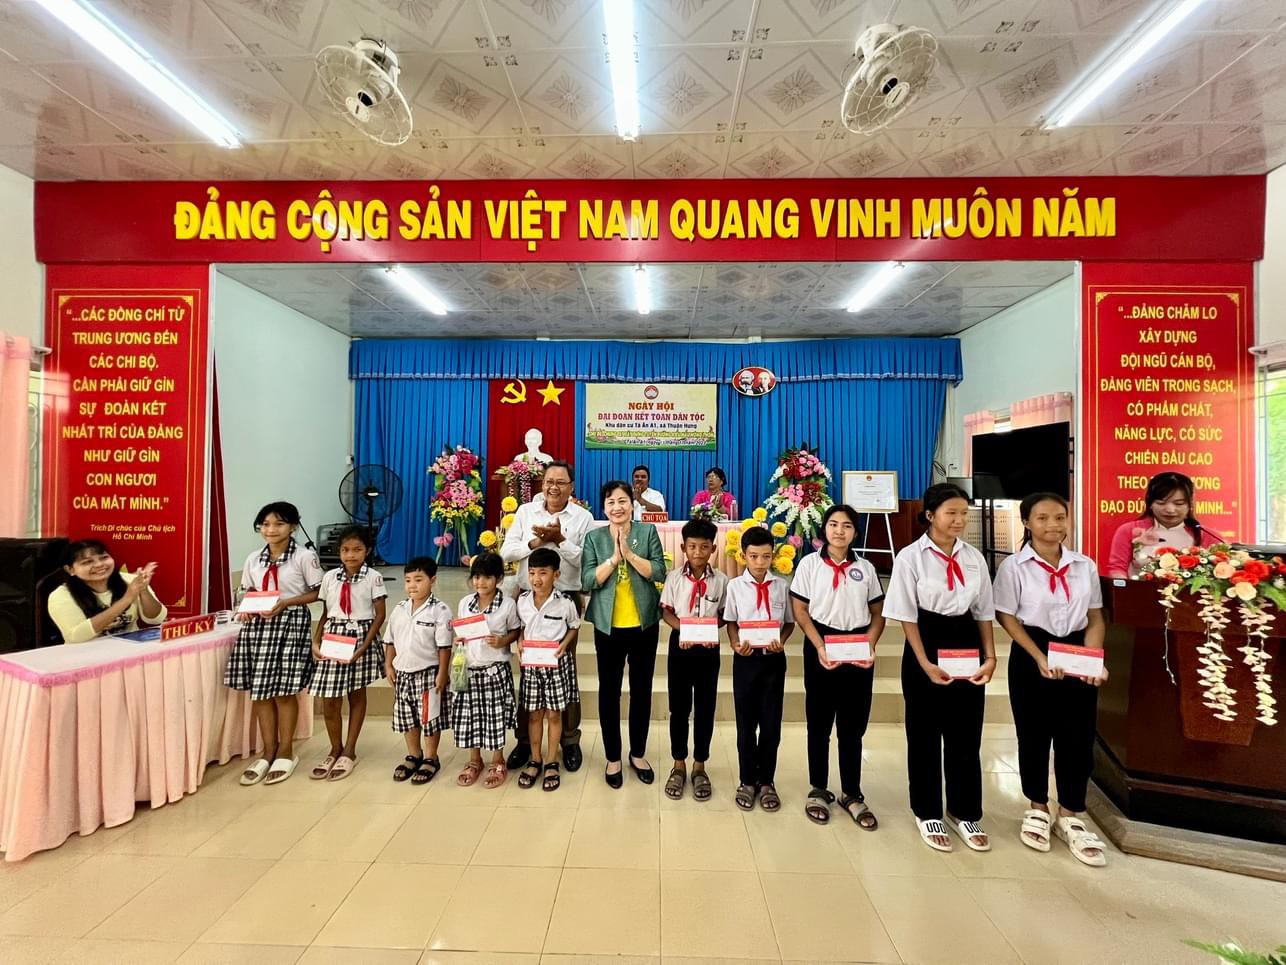 Ngày hội đại đoàn kết toàn dân tộc ấp Tà Ân A1, xã Thuận Hưng, huyện Mỹ Tú